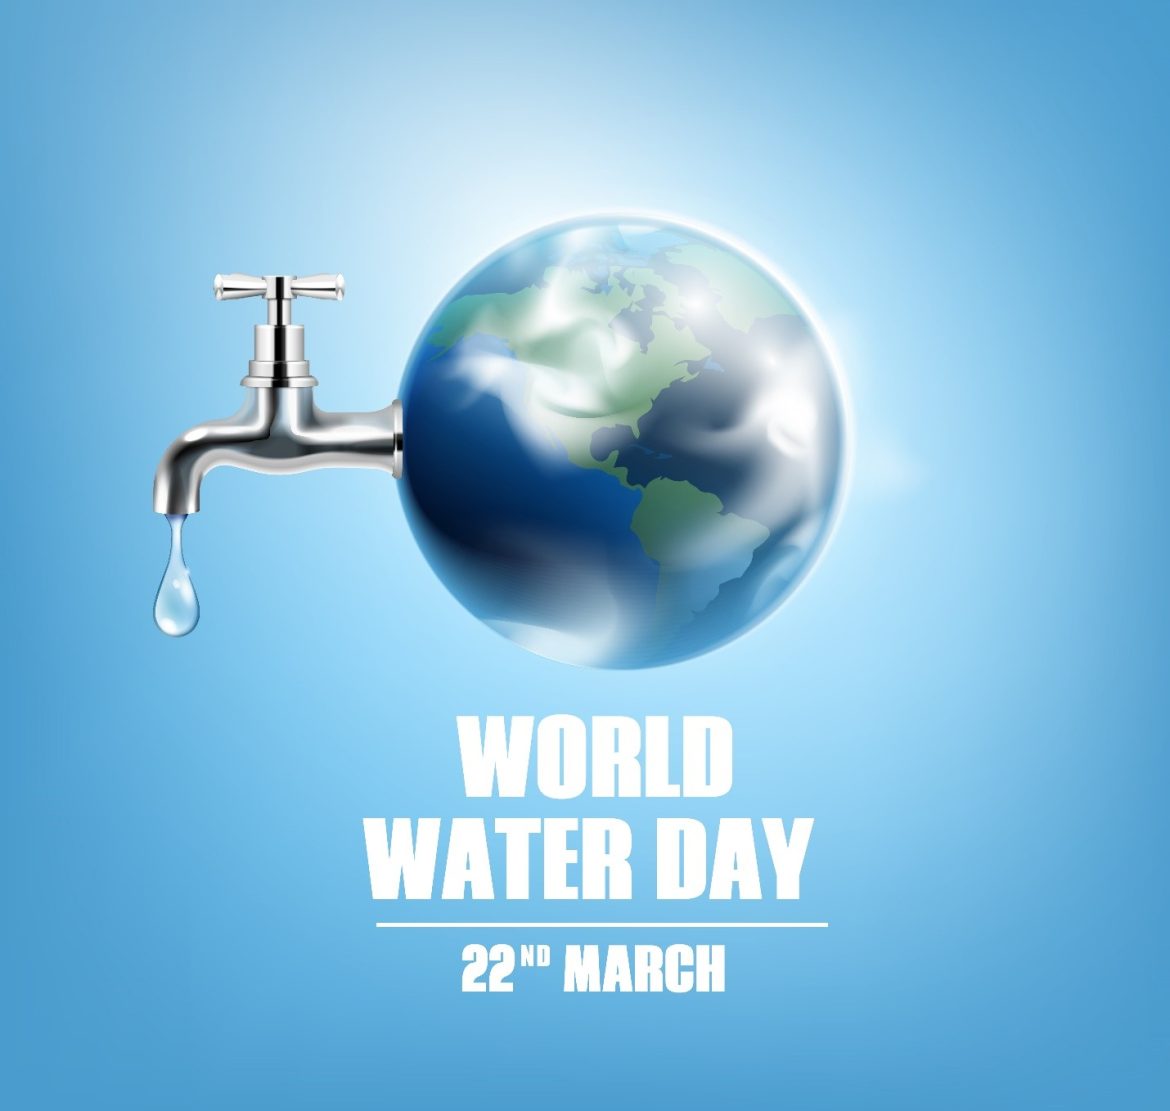 World Water Day : जल स्रोतों के संरक्षण और संवर्धन के लिए प्रतिबद्ध होने की जरूरत : मुख्यमंत्री भूपेश बघेल